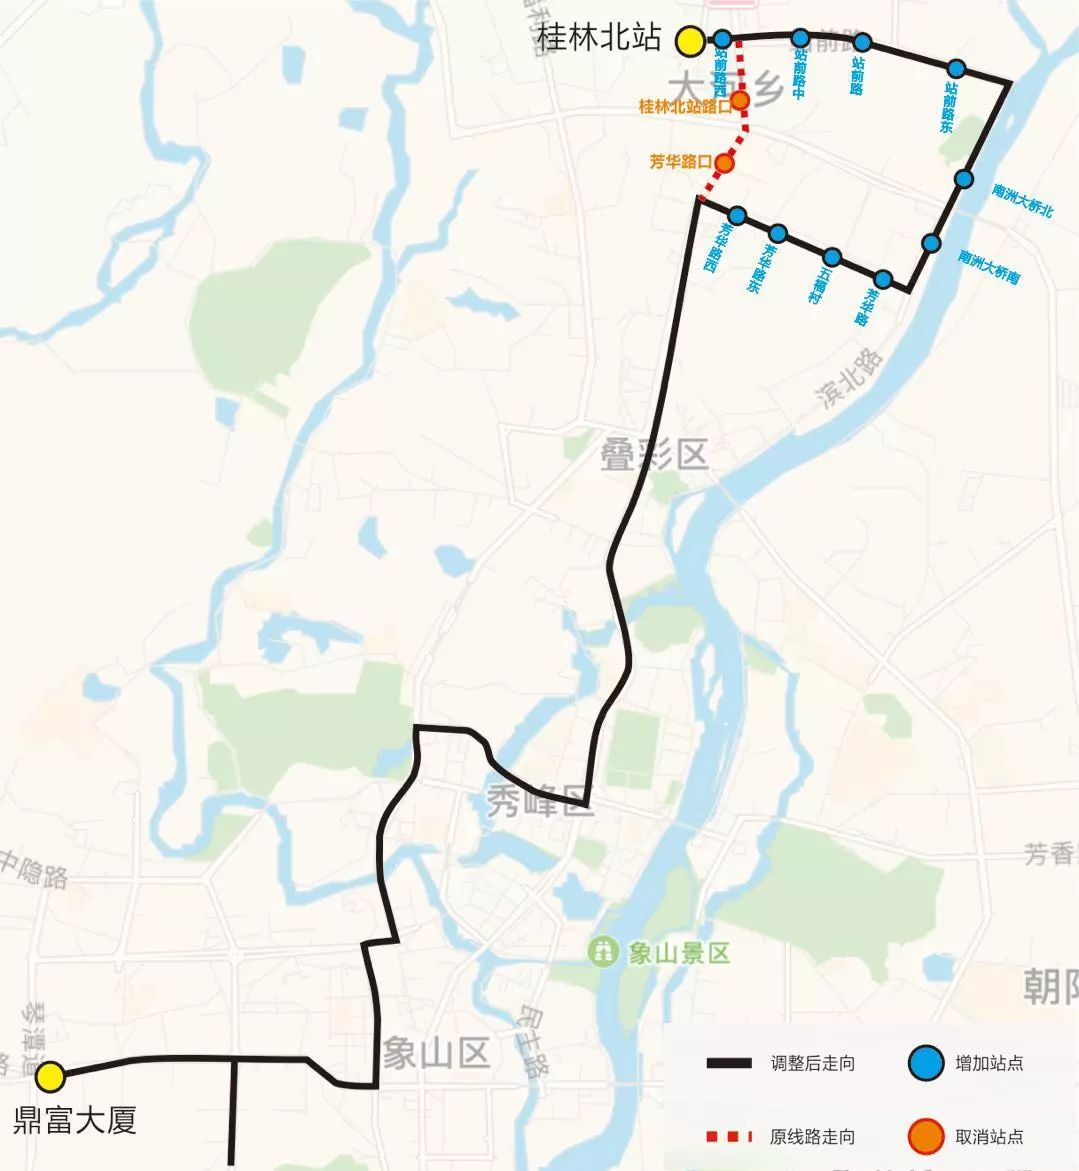 为方便叠彩万达片区居民的公交出行,9月21日起,桂林1路公交线路调整